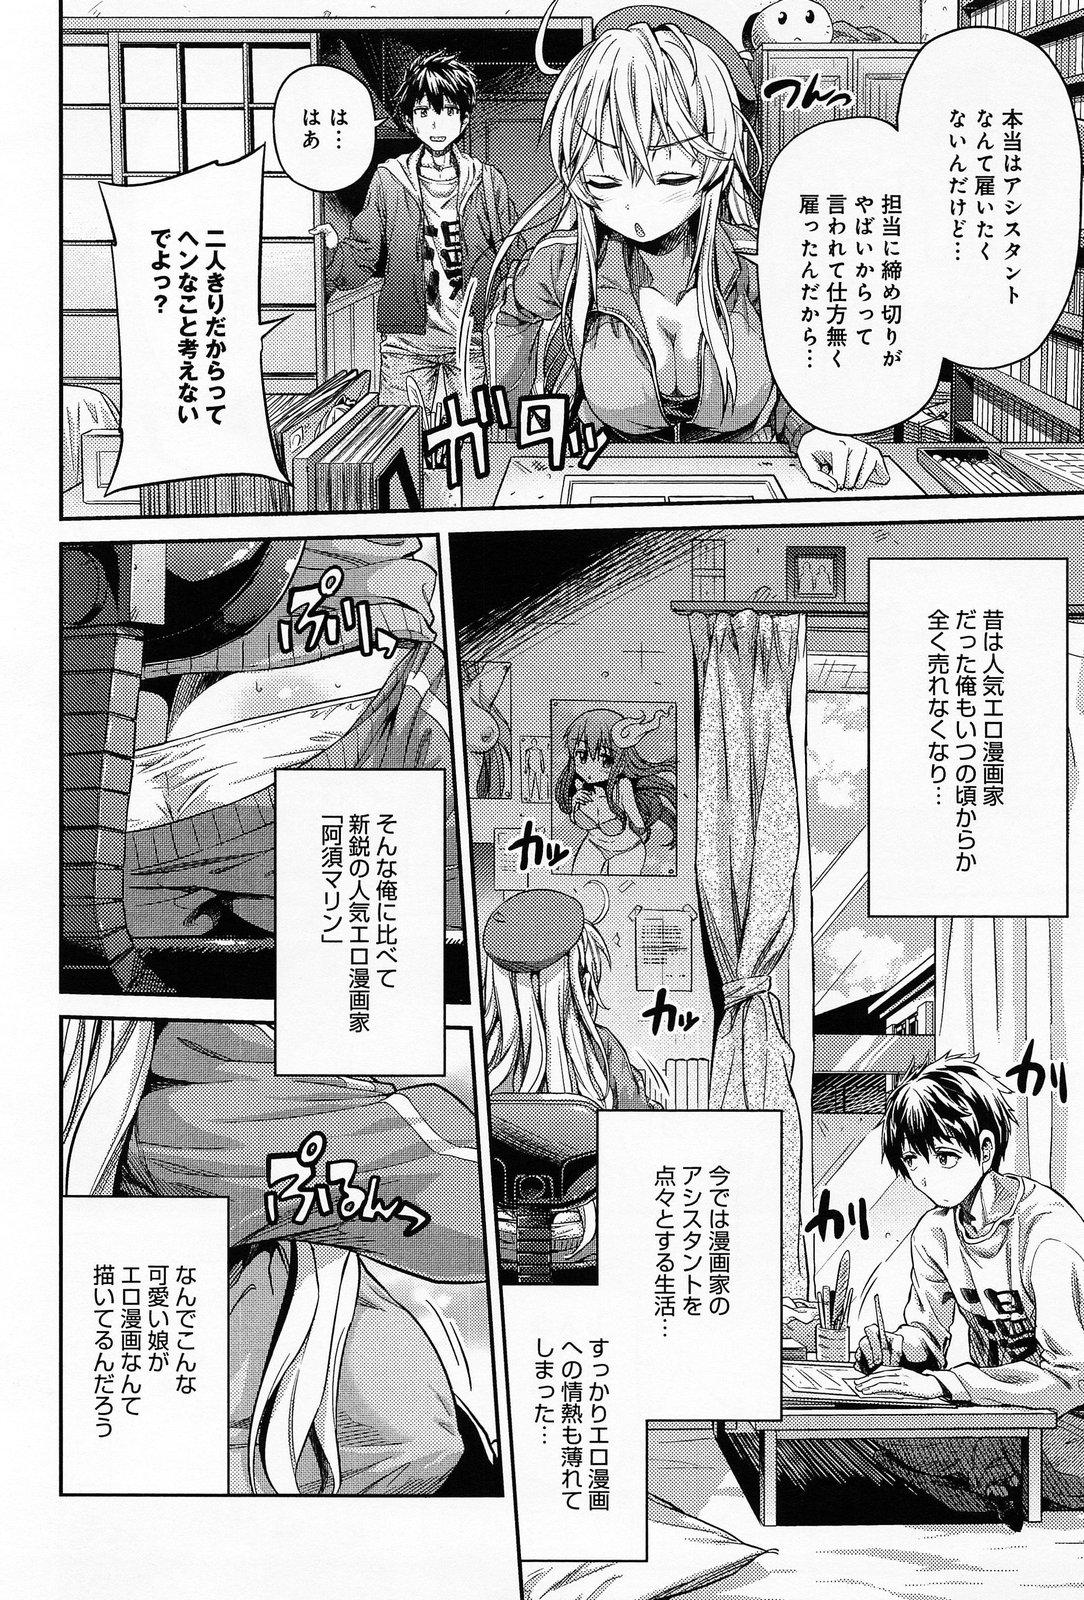 Bush Man × Koi Ero Manga de Hajimaru Koi no Plot Asstomouth - Page 2